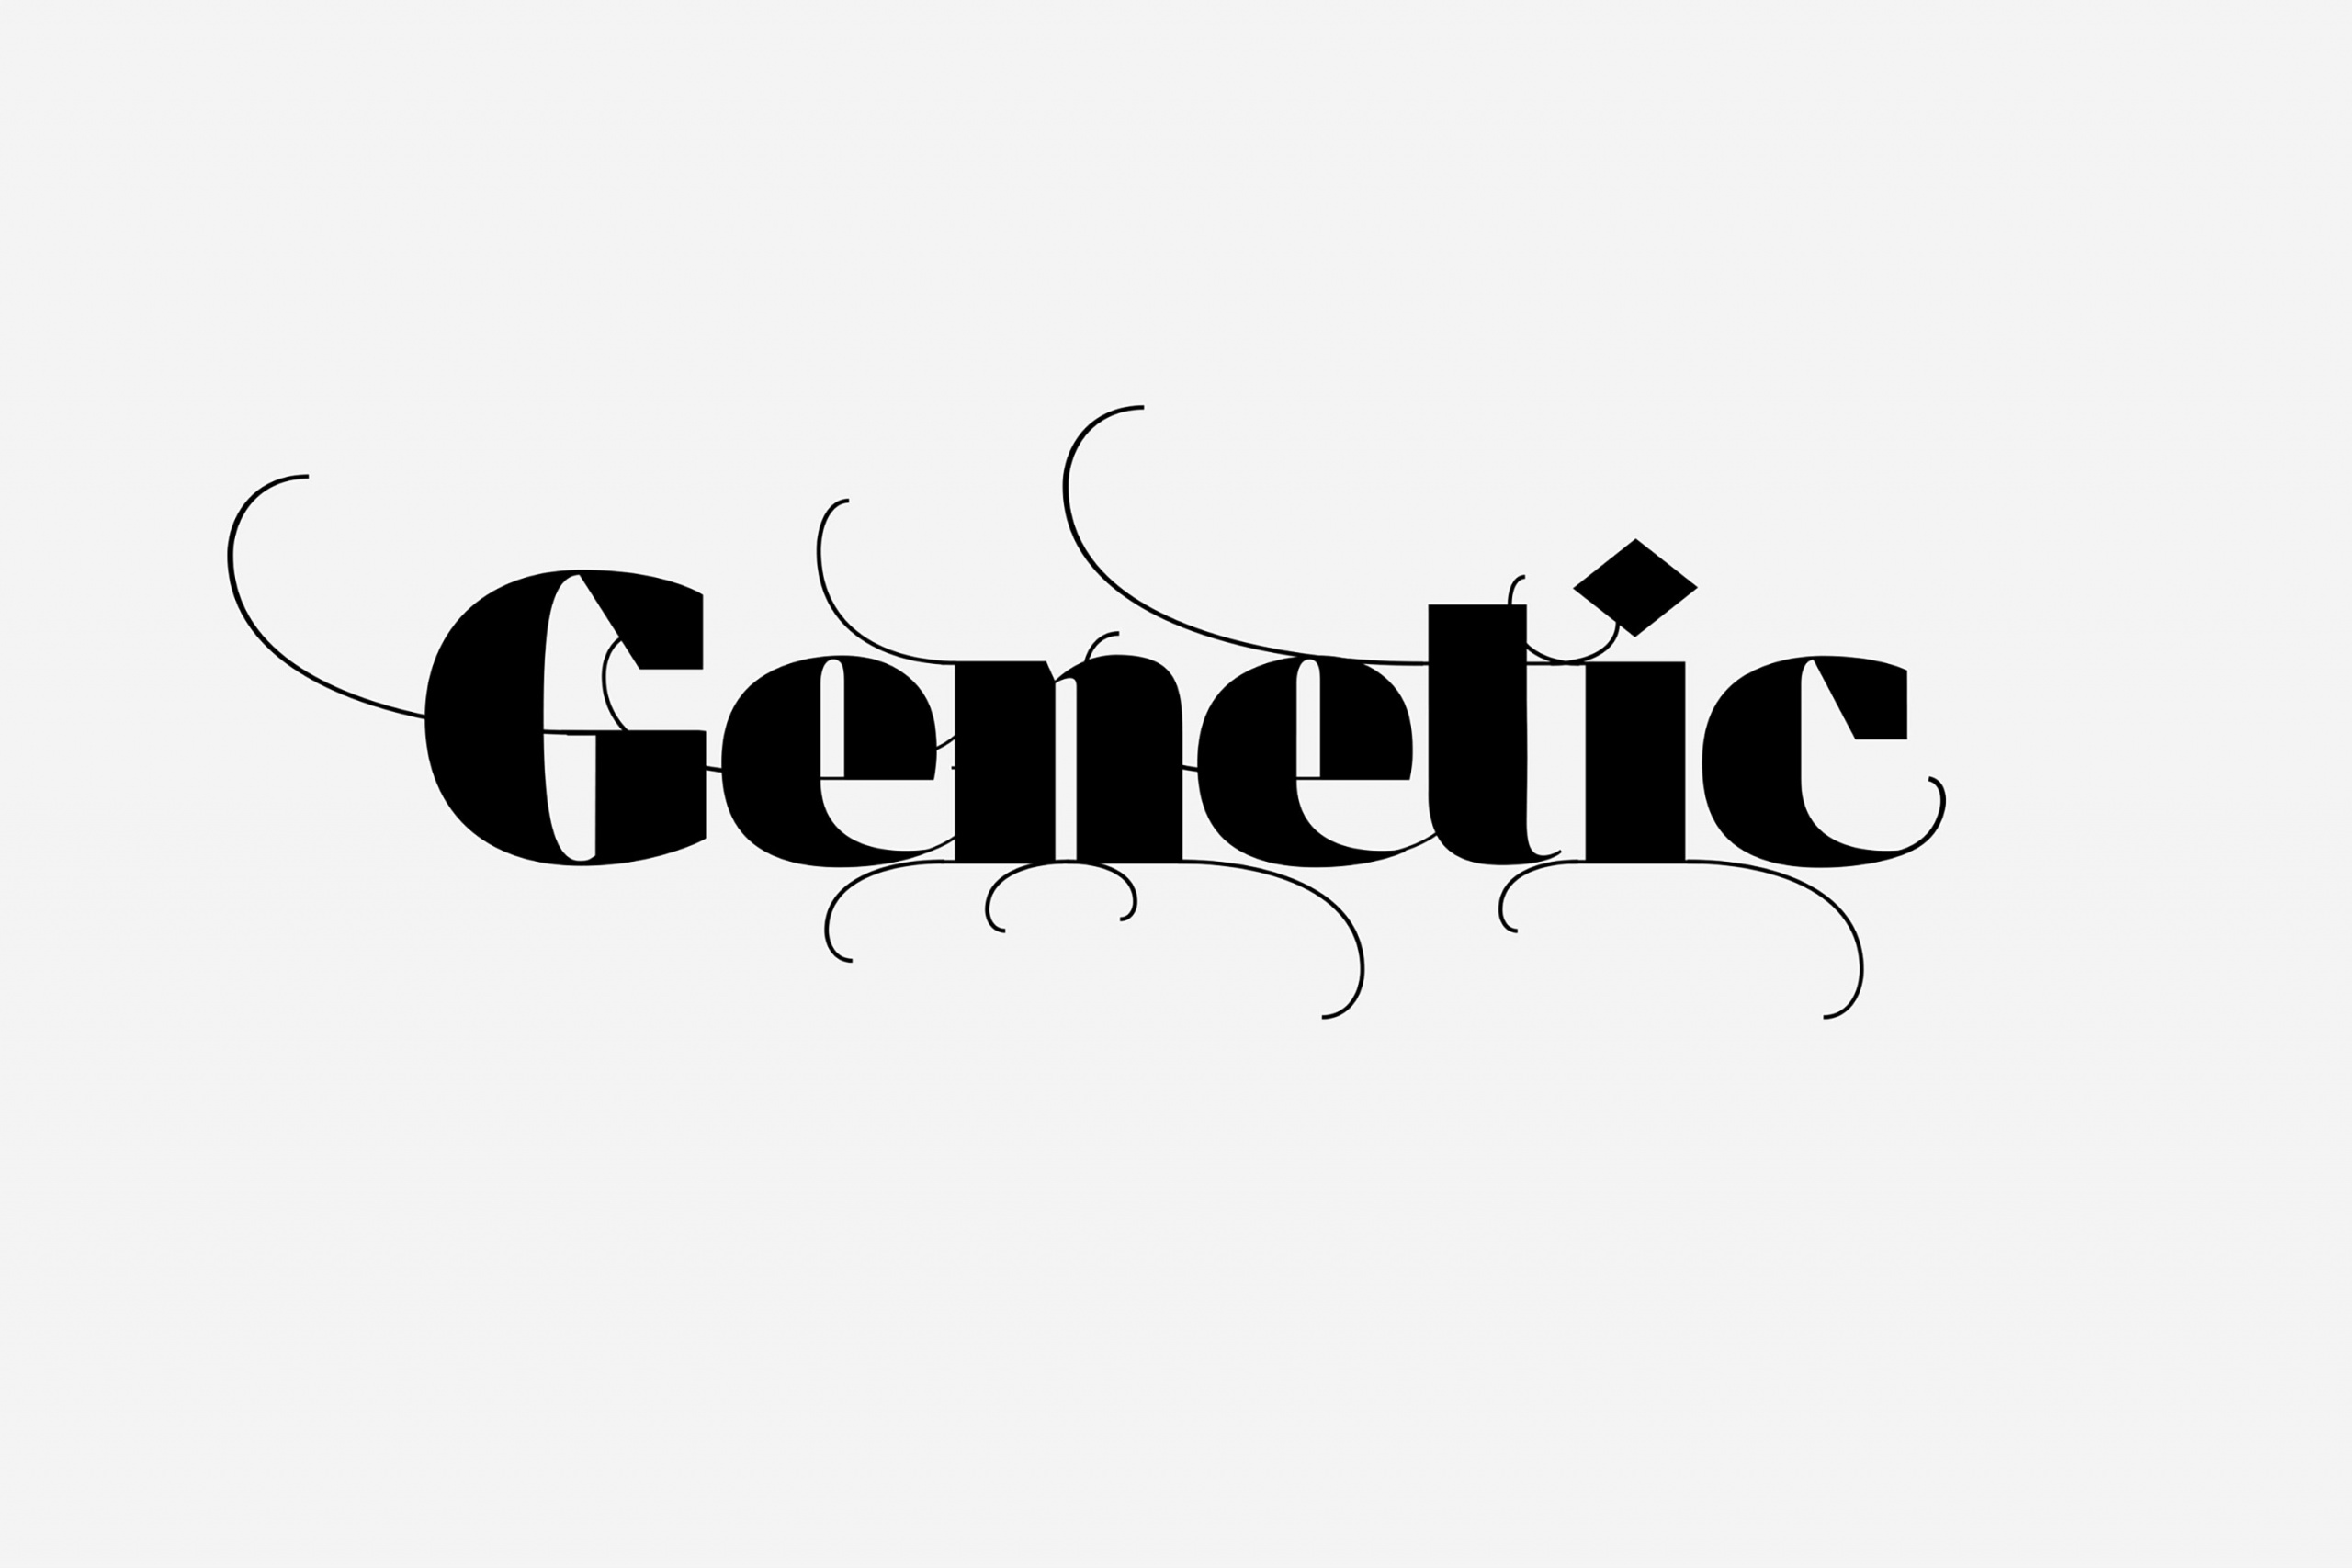 Genetic